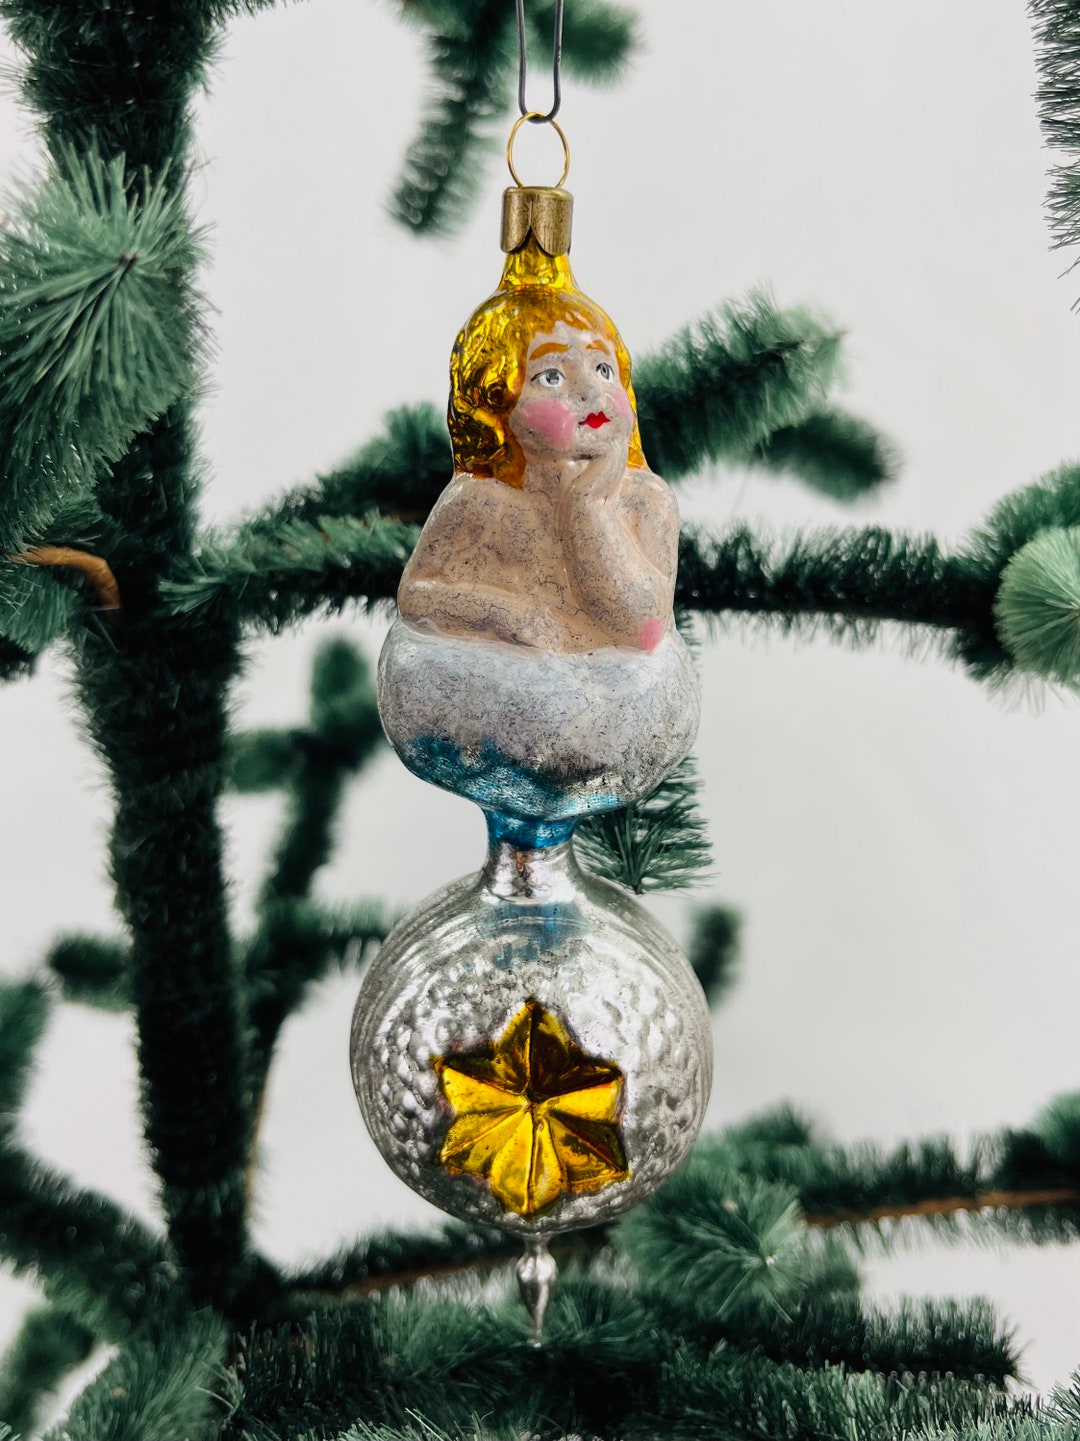 Miniature Christmas Decorations From Lauscha 5 Reflex Balls 